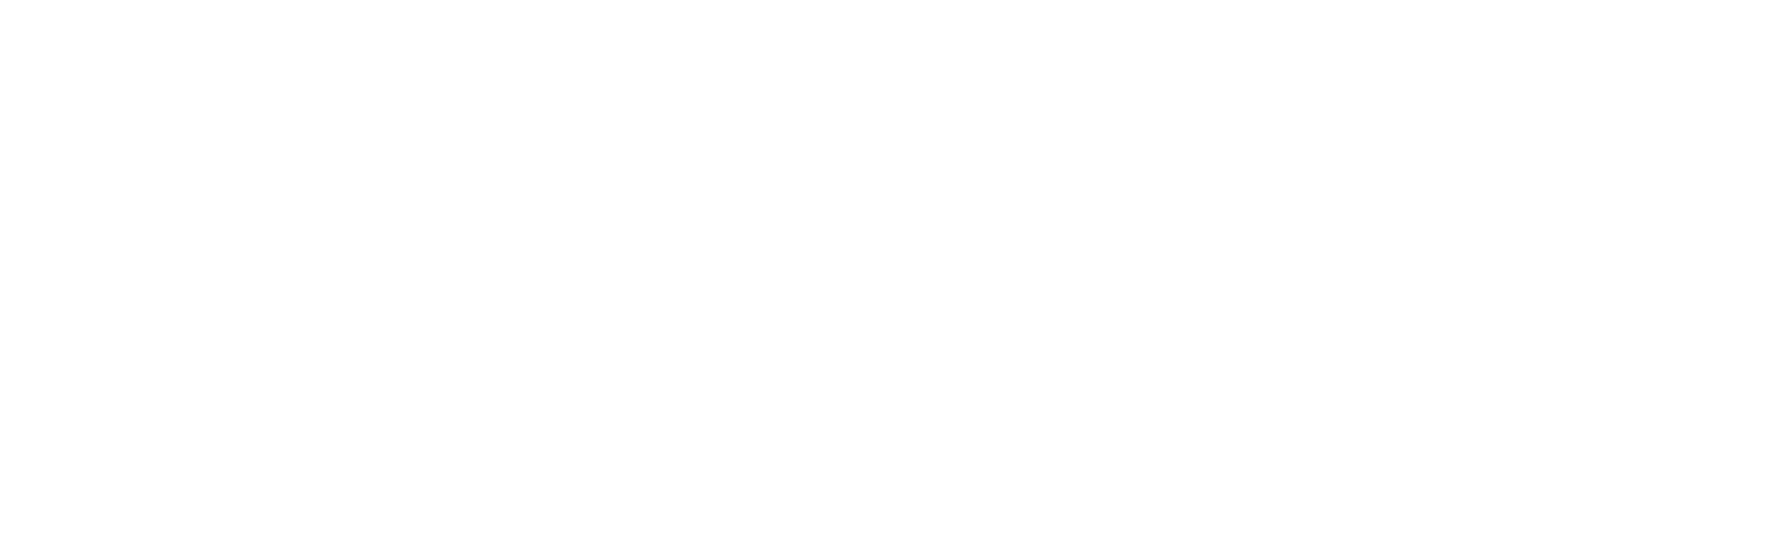 San Diego International Film Festival laurel